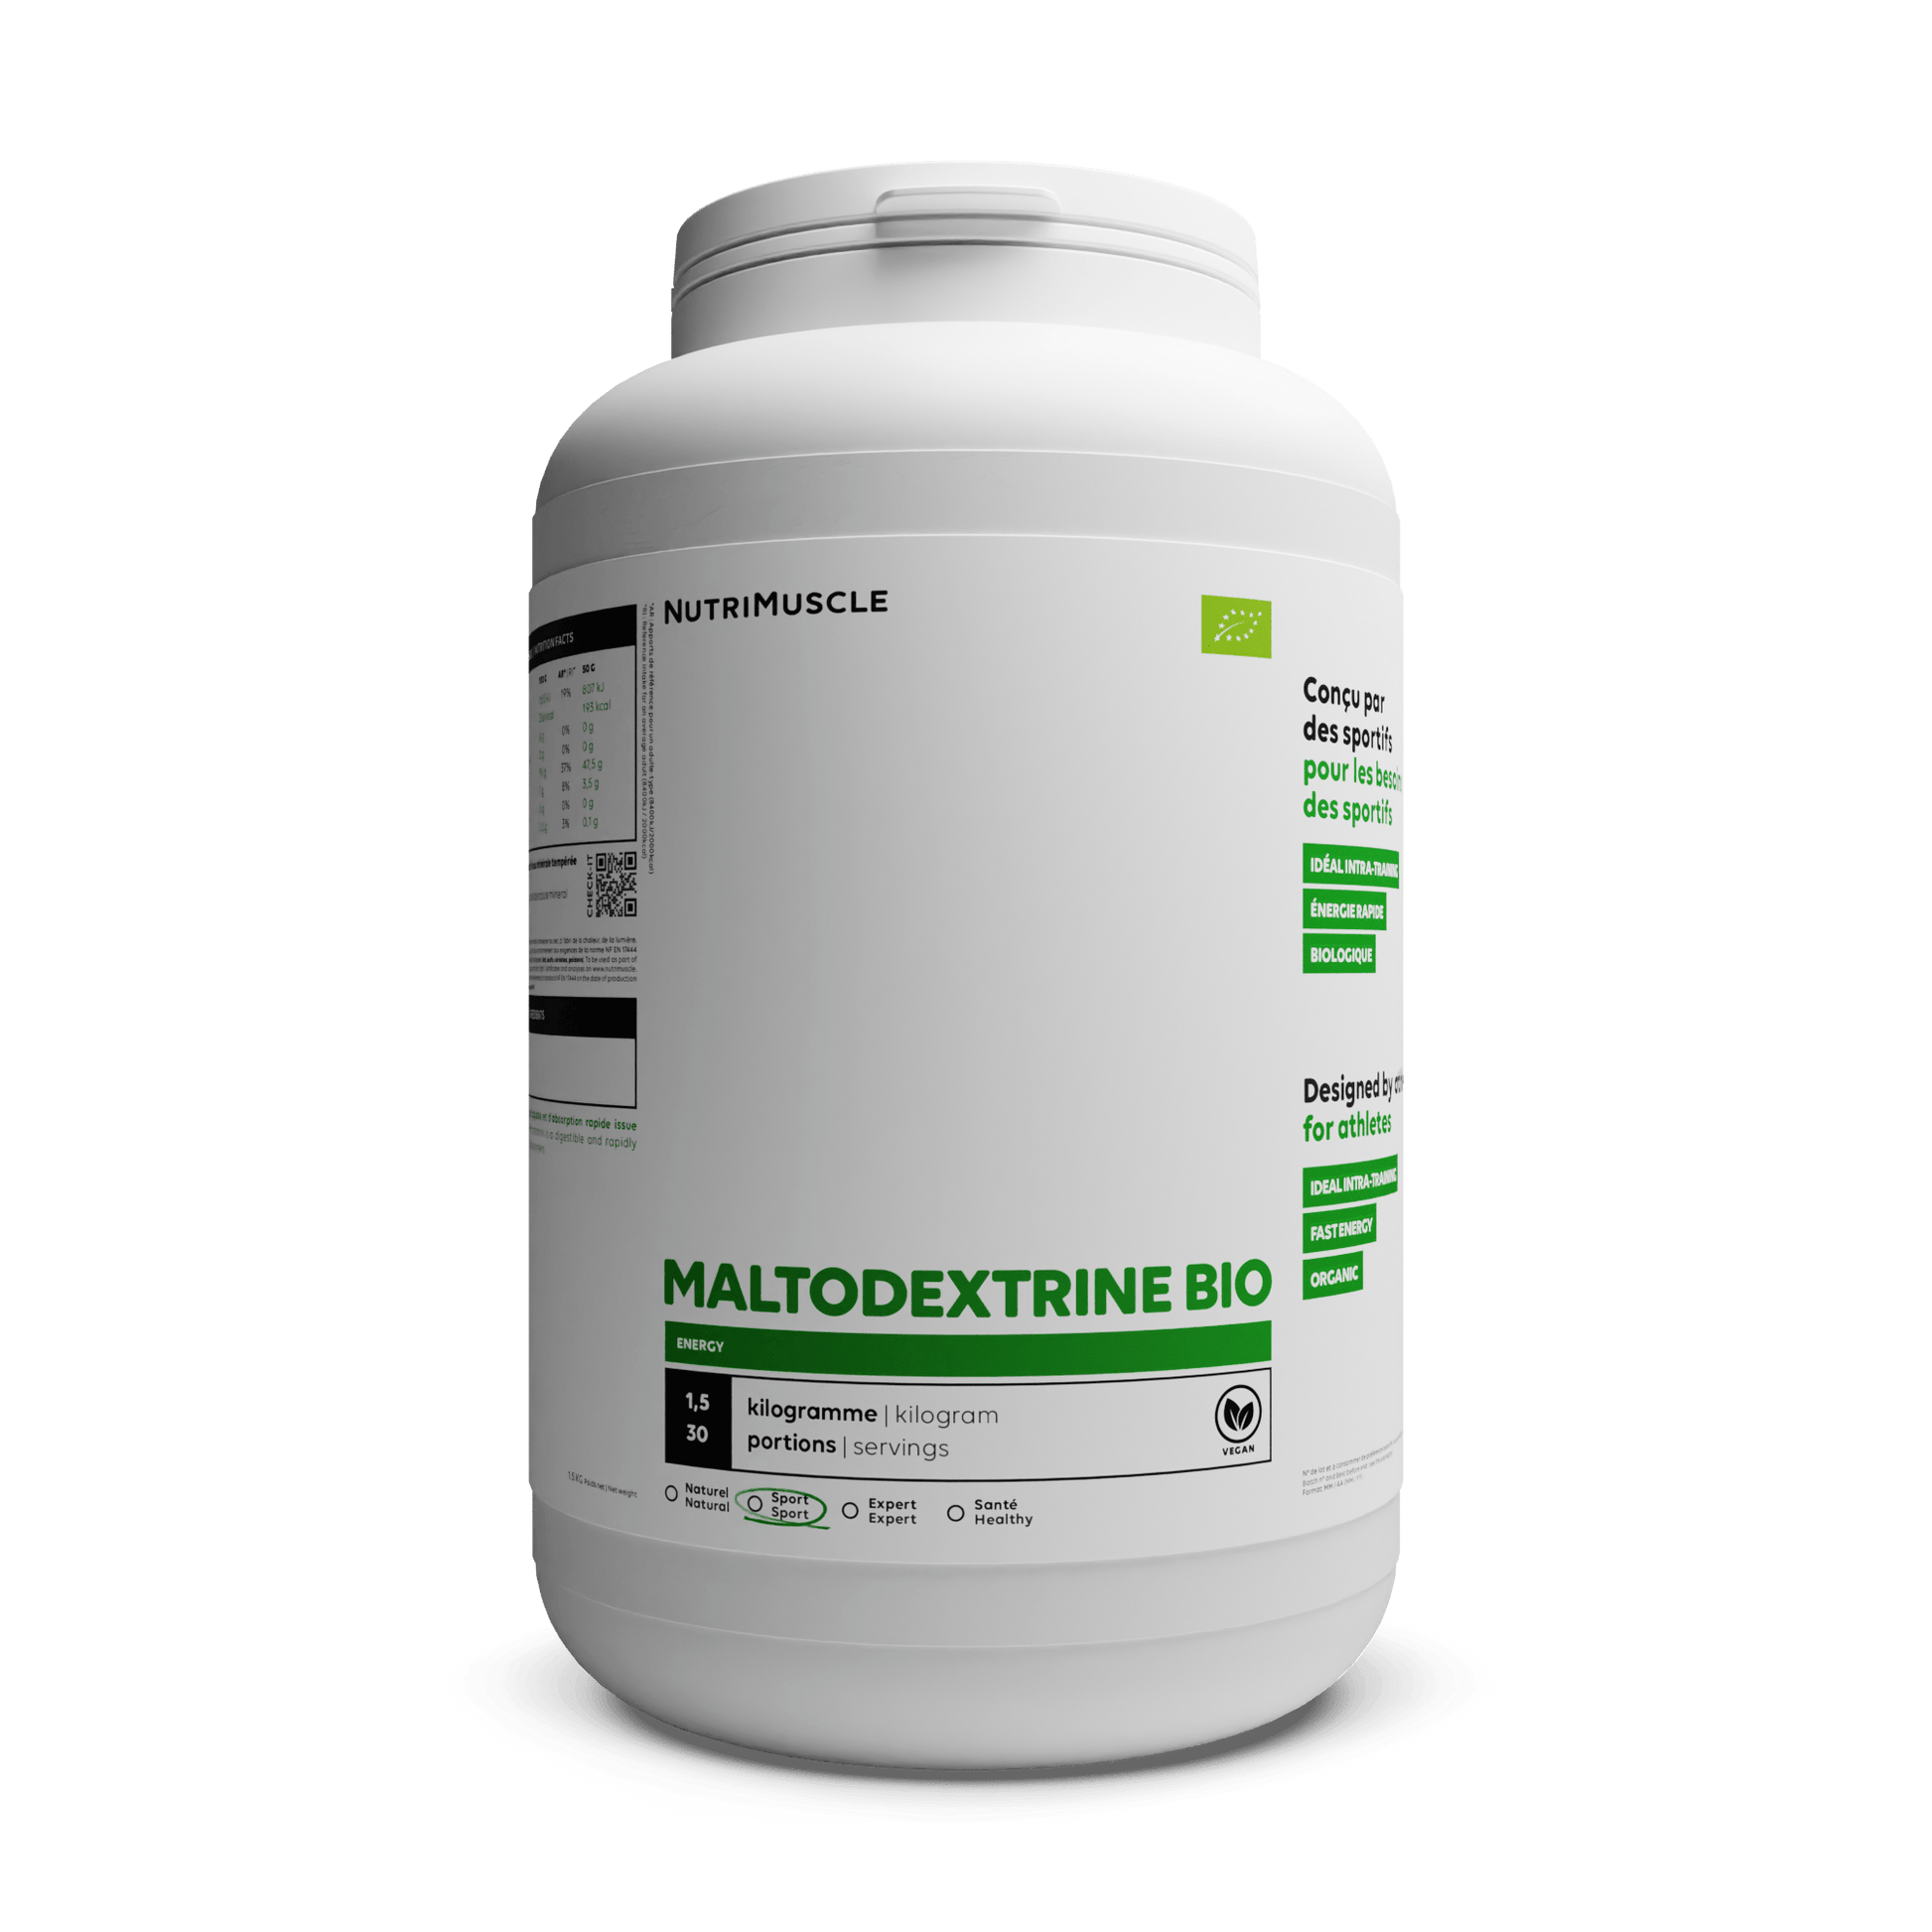 Nutrimuscle Glucides MALB150000 / default_taille / default_gout Maltodextrine biologique